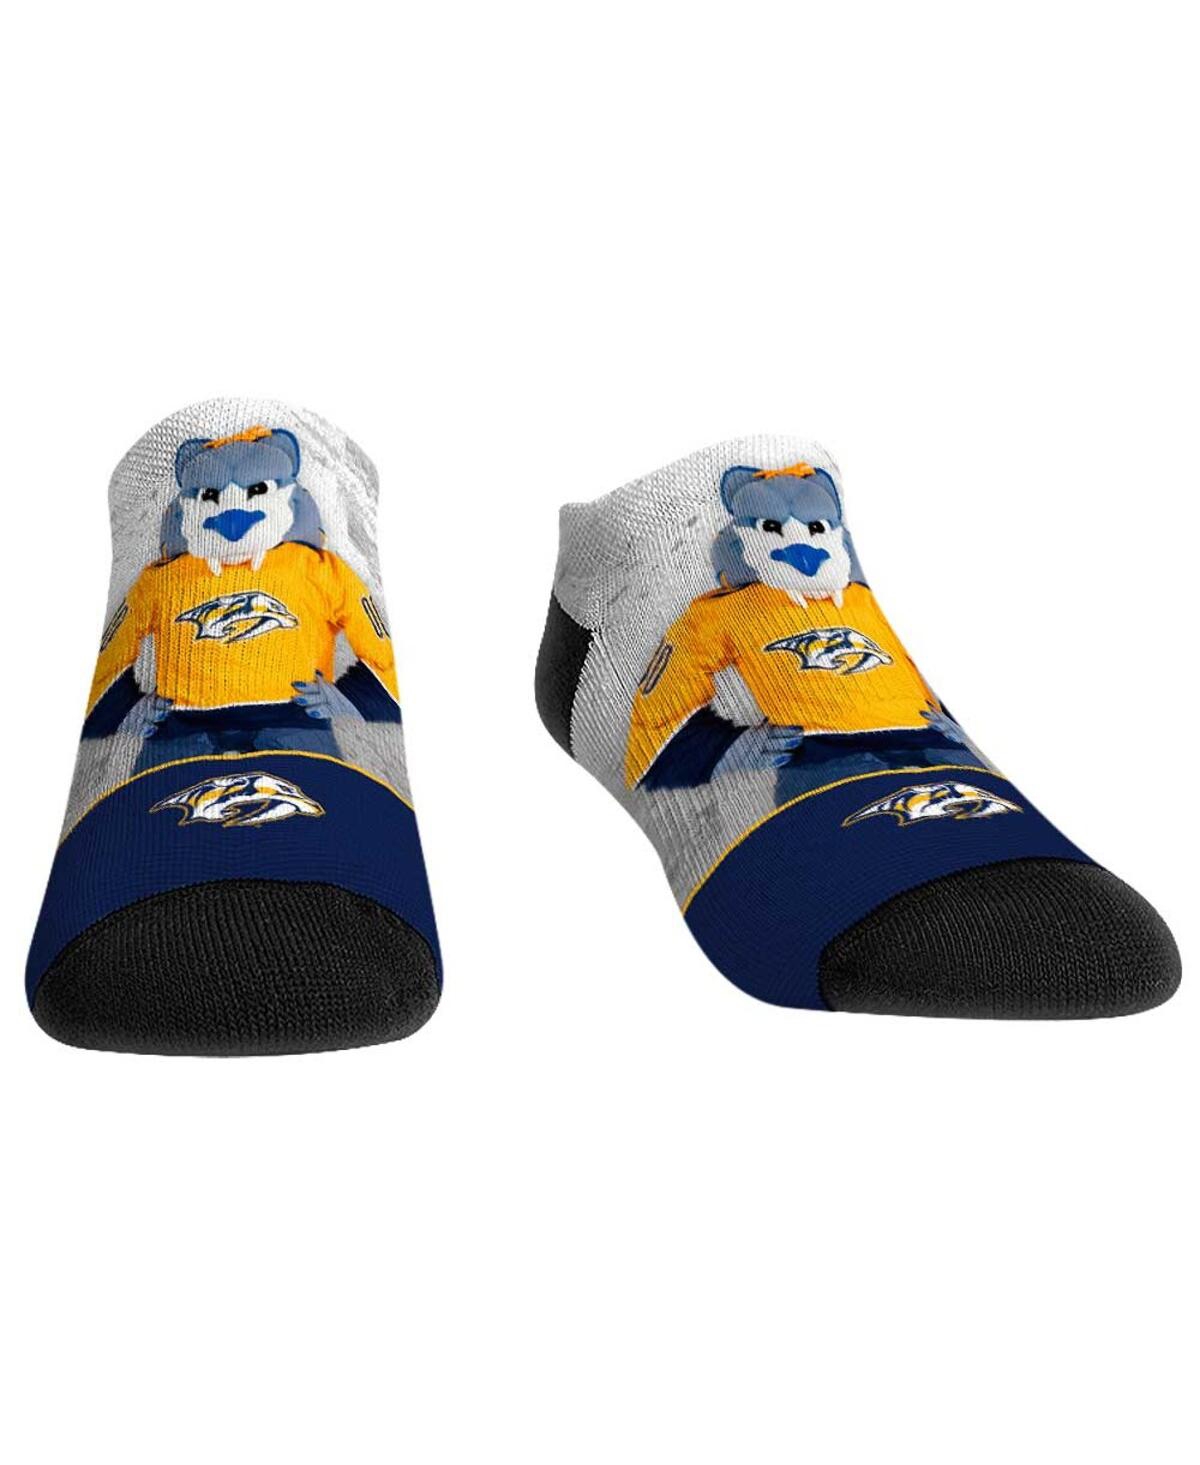 Rock 'em Men's And Women's  Socks Nashville Predators Mascot Walkout Low Cut Socks In Blue